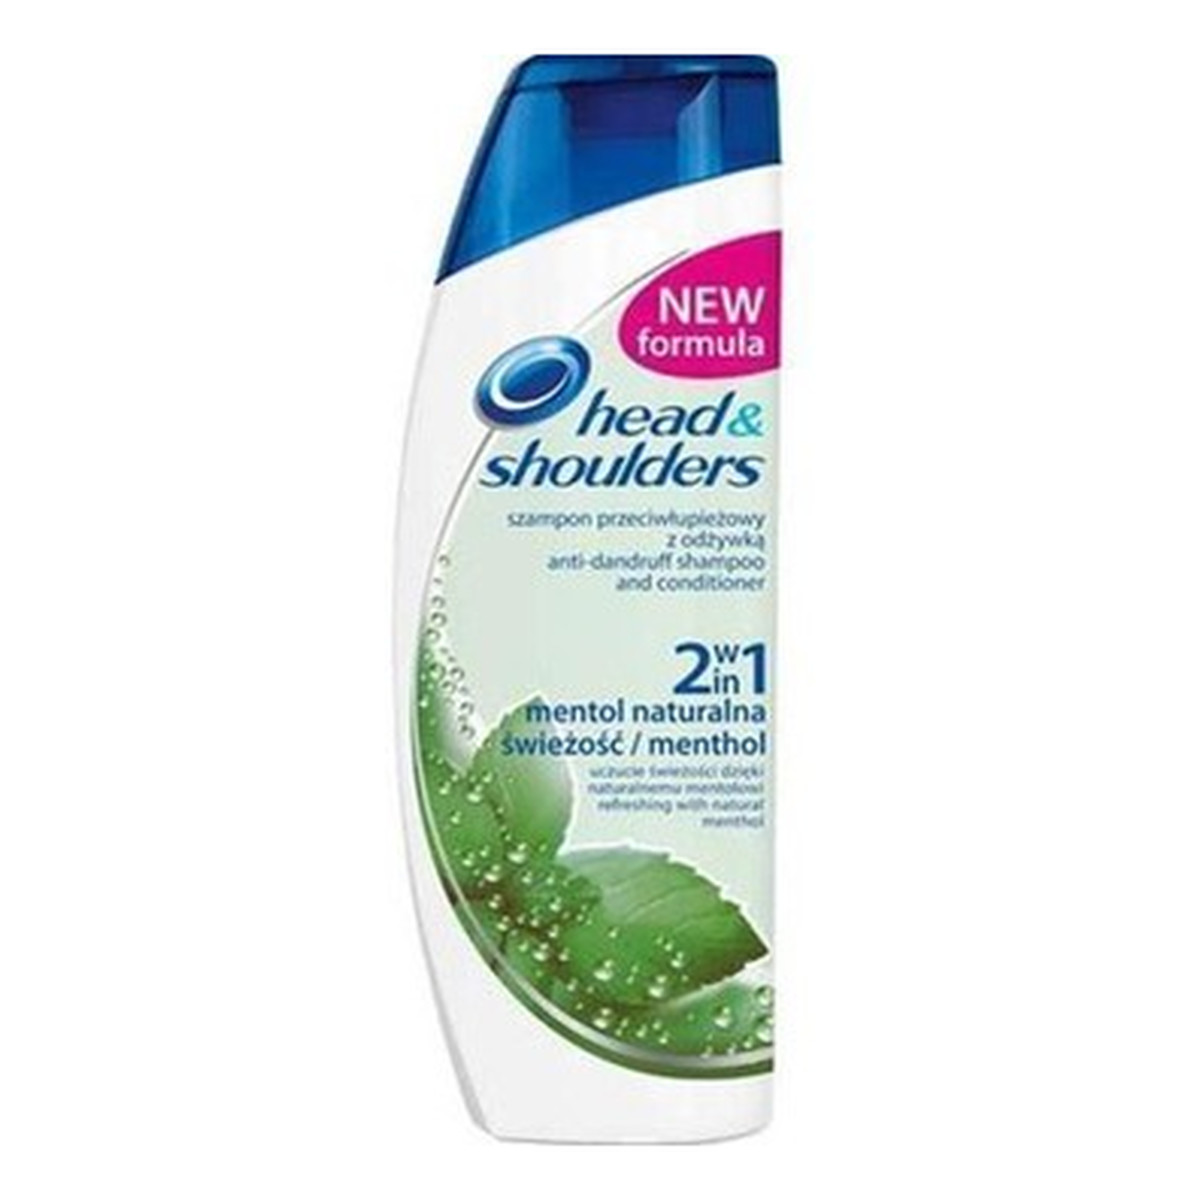 head shoulders menthol szampon przeciwłupieżowy z odżywką 2w1 naturalna świeżość